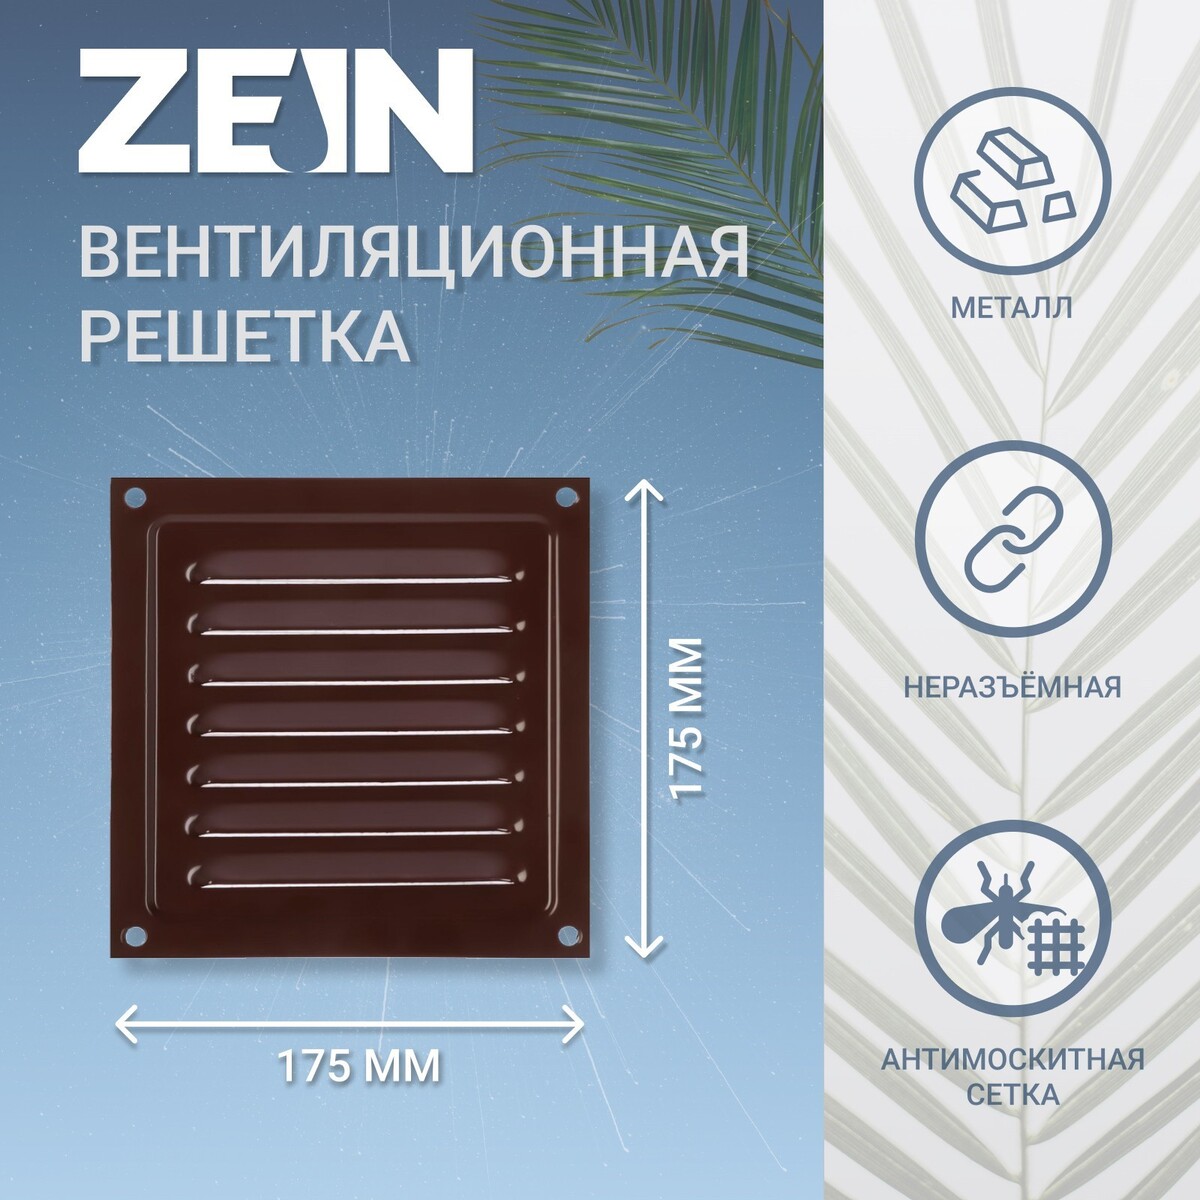 Решетка вентиляционная zein люкс рм1717кр, 175 х 175 мм, с сеткой, металлическая, коричневая